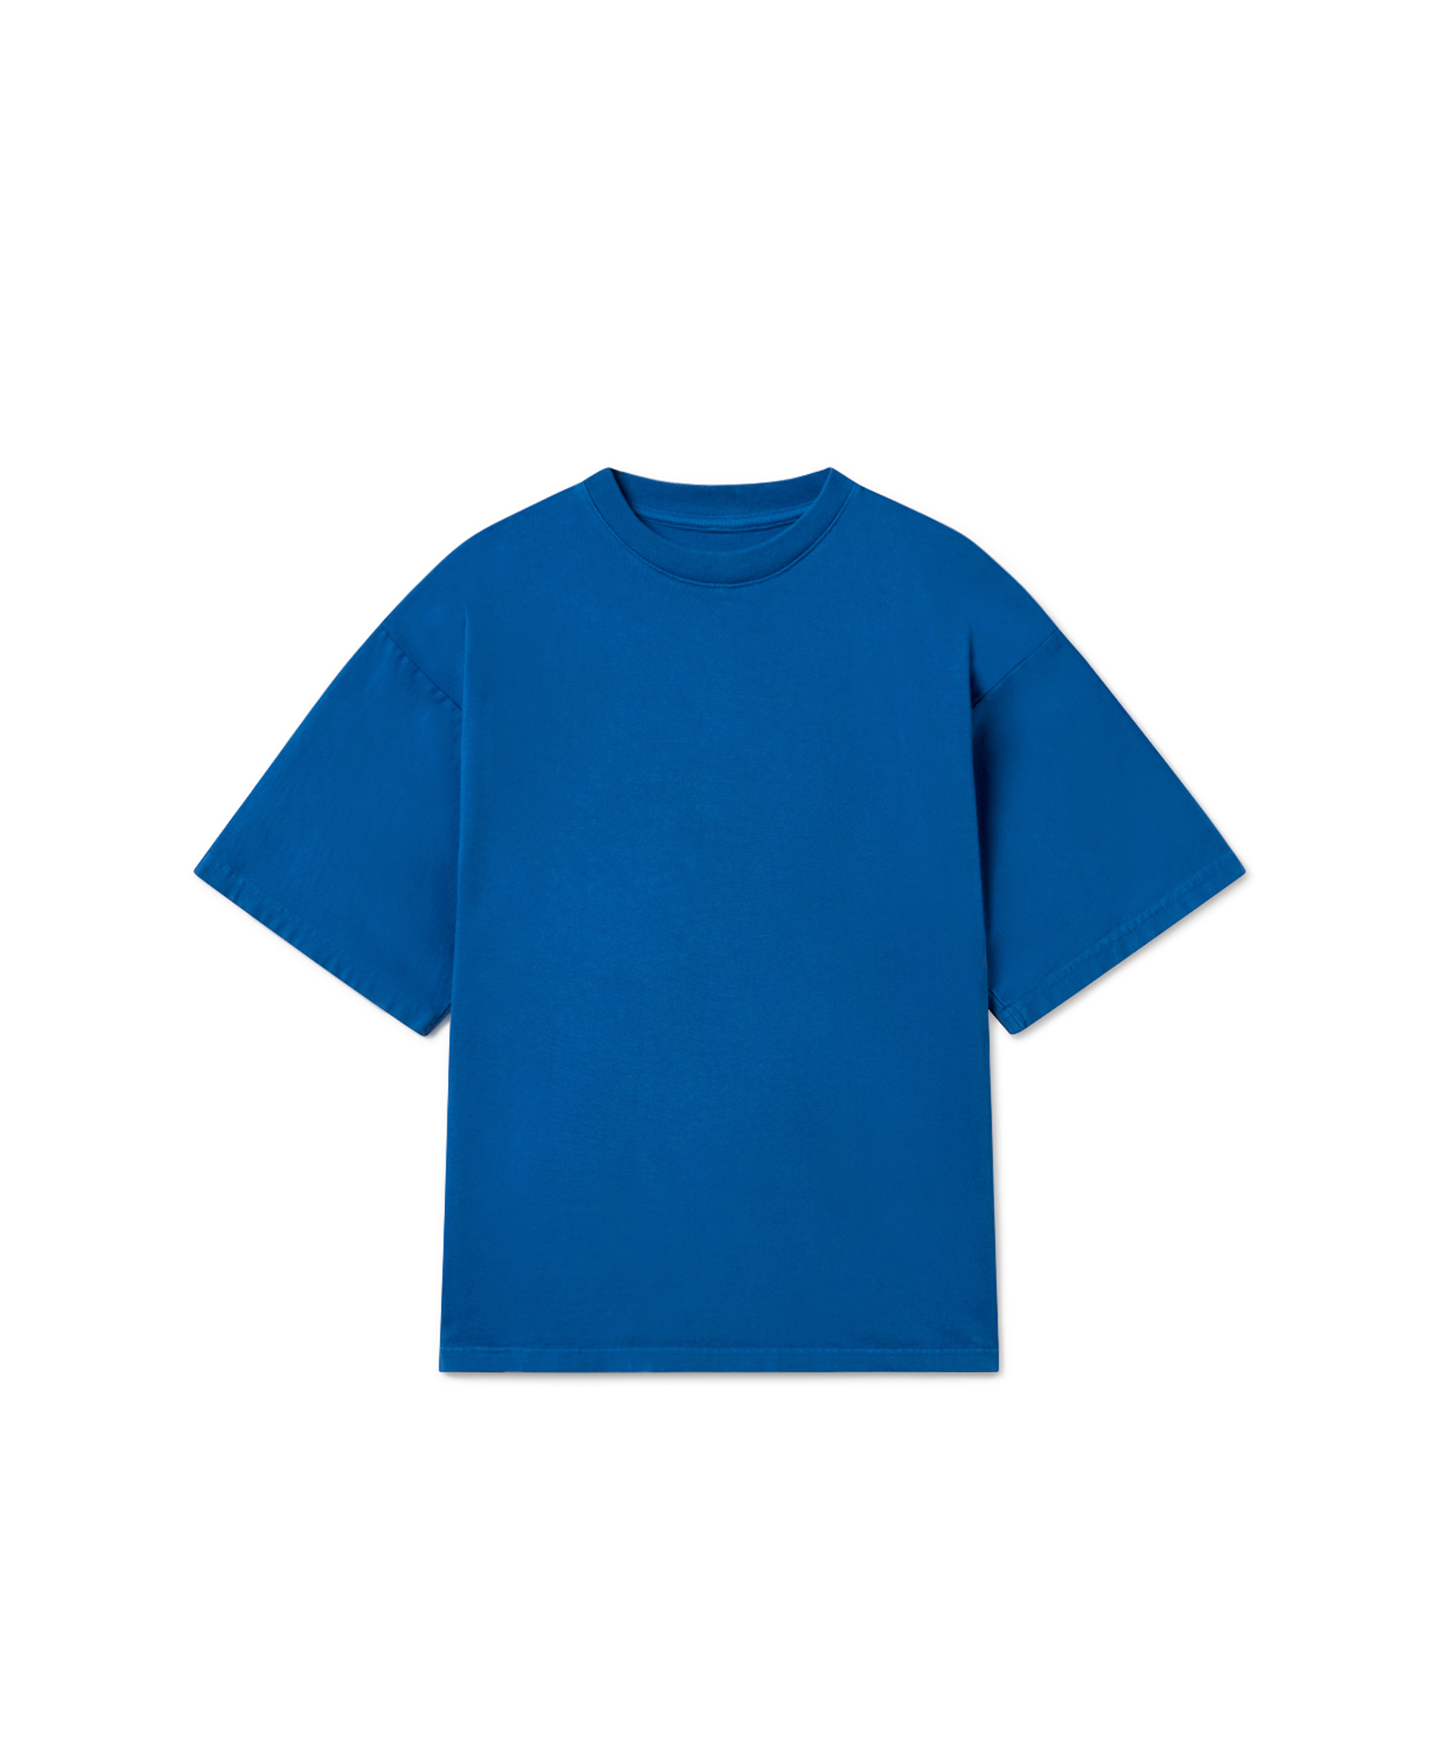 300 GSM 'Royal Blue' T-Shirt